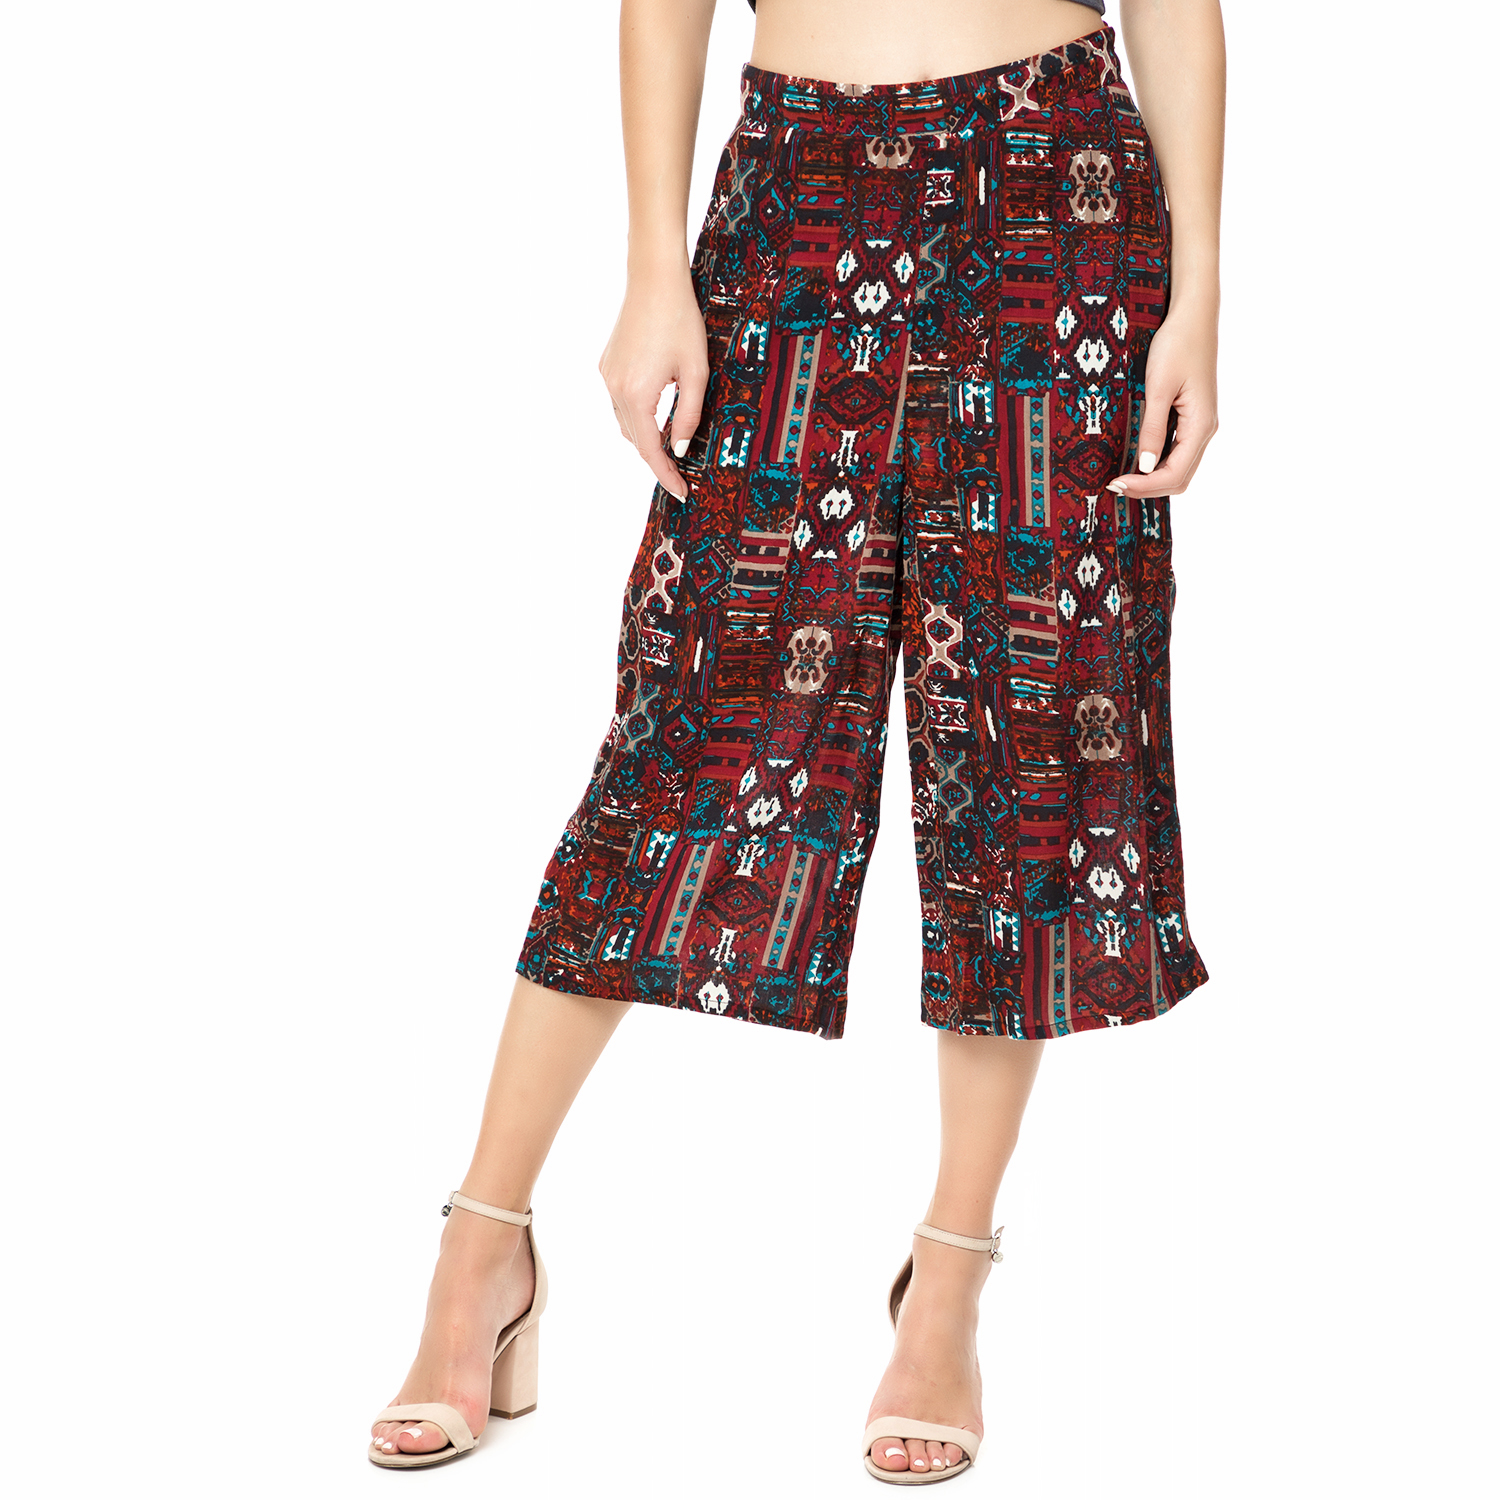 Γυναικεία/Ρούχα/Παντελόνια/Cropped FUNKY BUDDHA - Γυναικεία ζιπ κιλότ FUNKY BUDDHA μπορντό με aztec μοτίβο